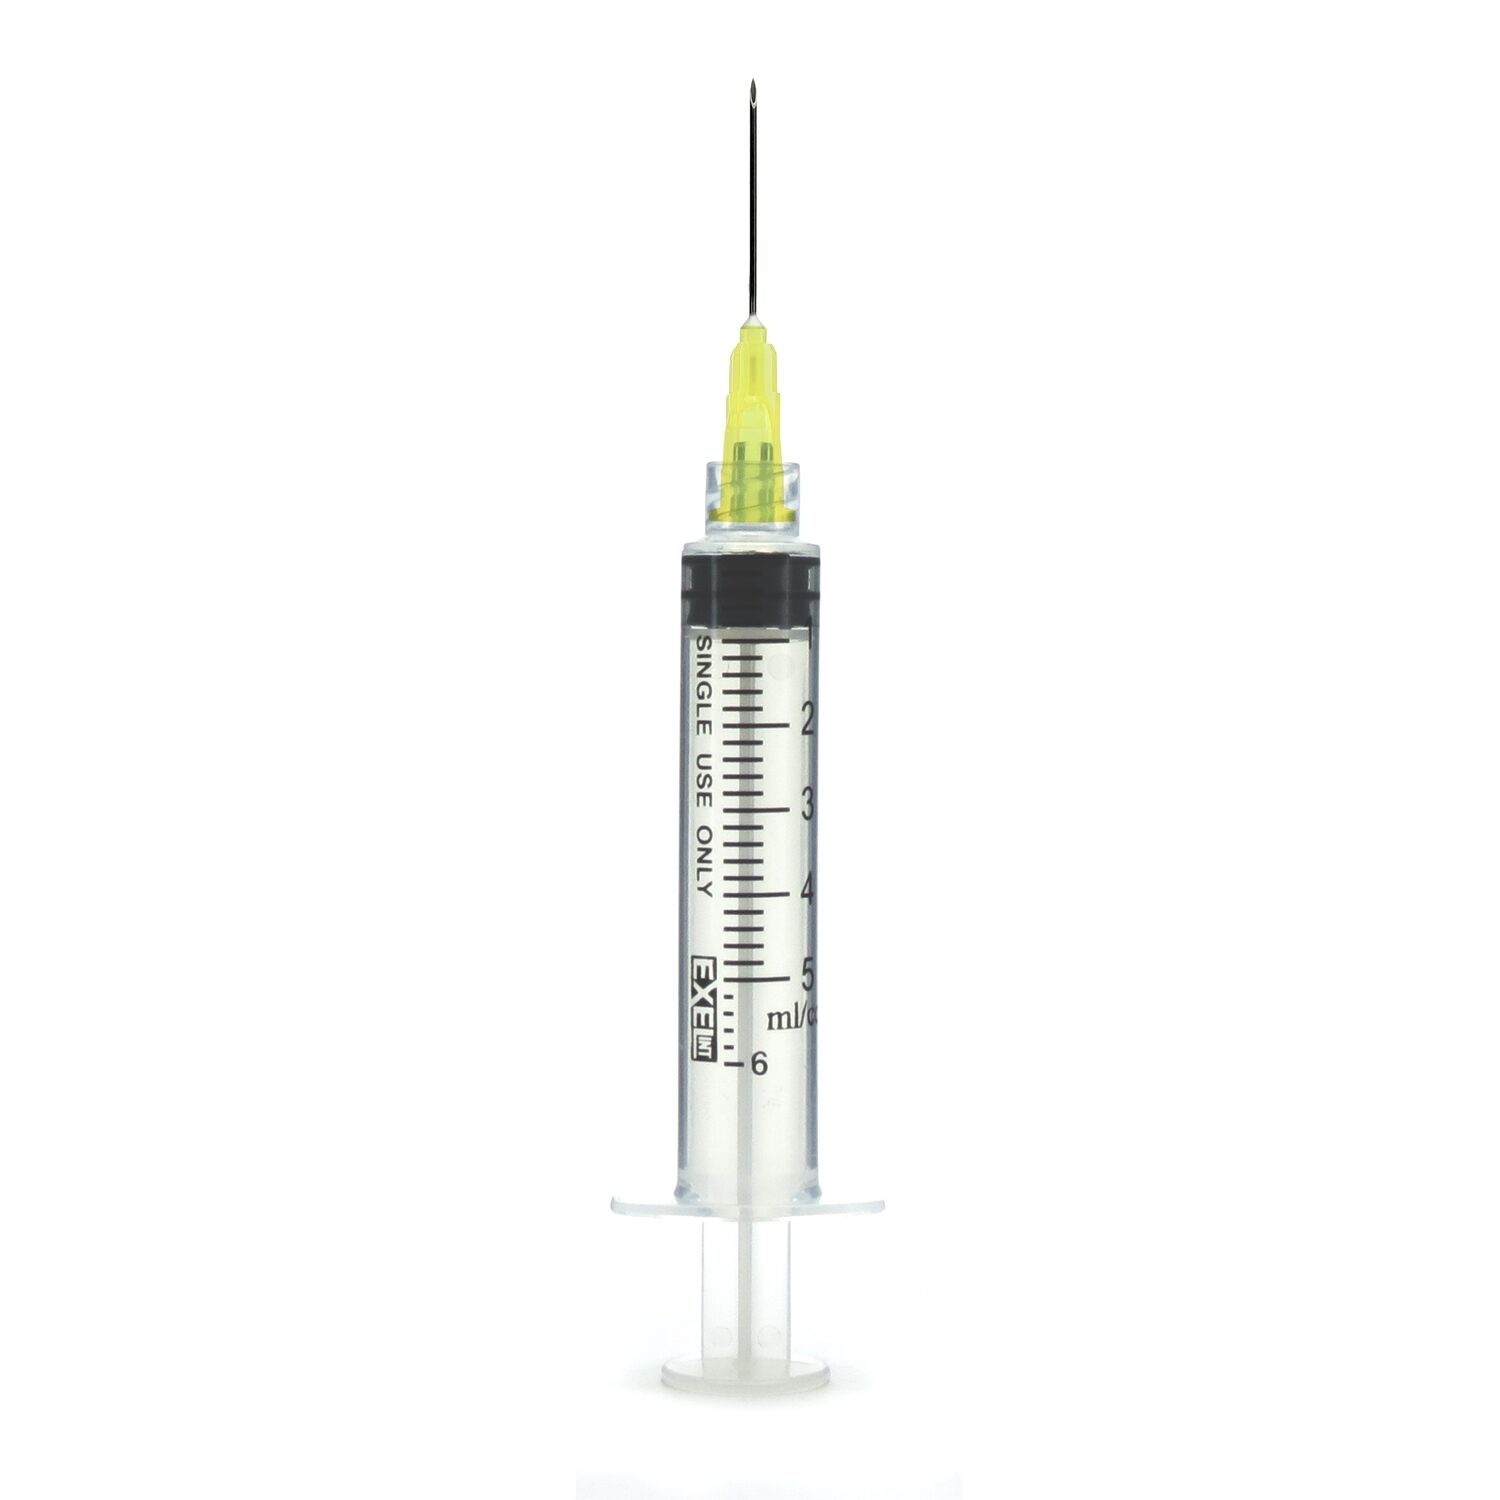 5cc Syringe With Needle - Luer Lock - 20g - 1.5 Needle (Box